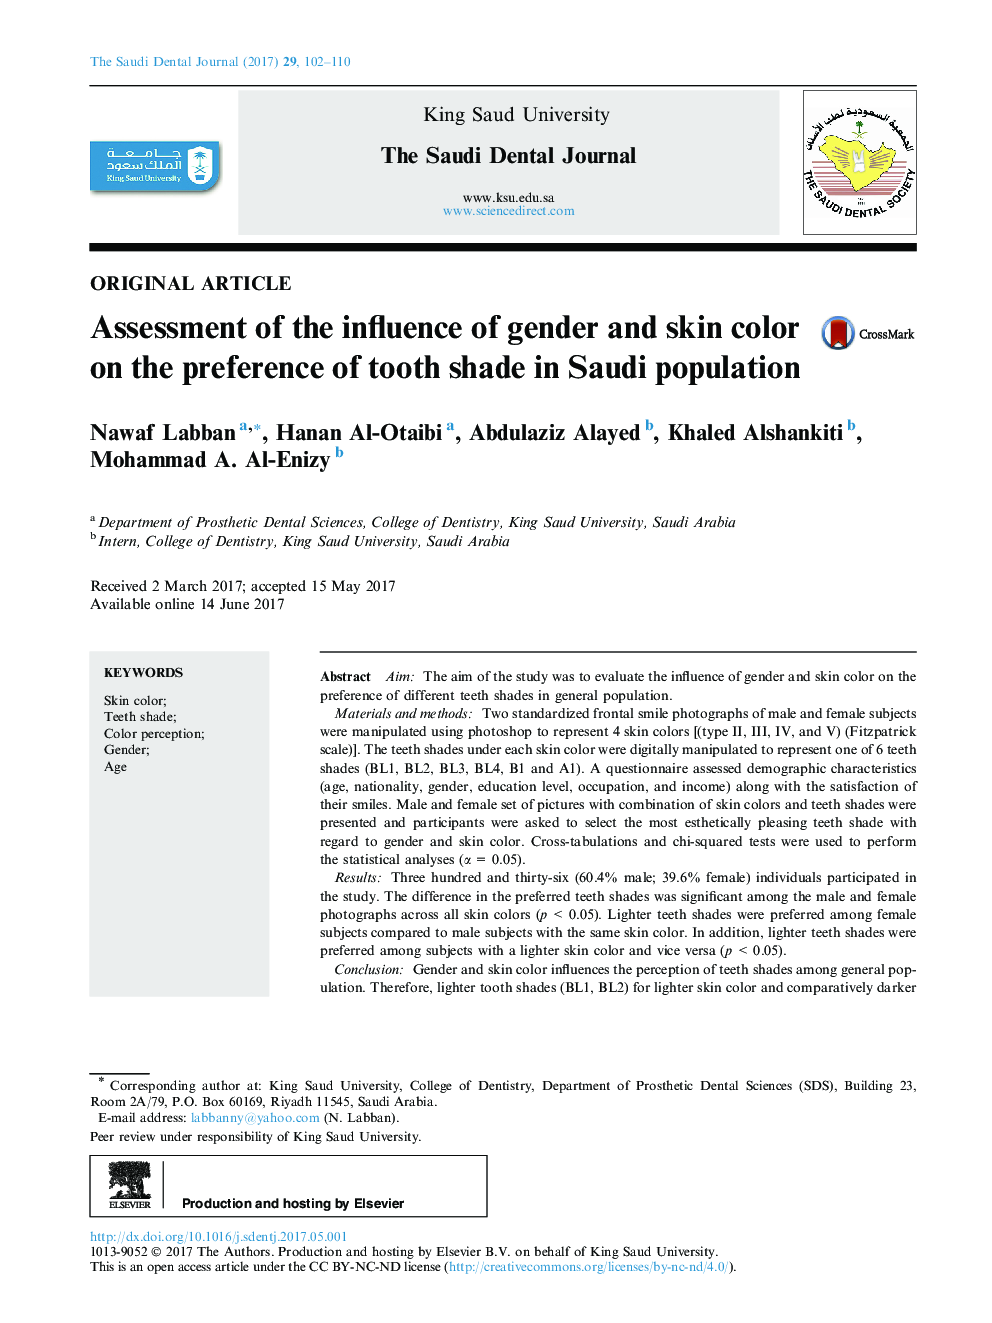 بررسی تاثیر جنسیت و رنگ پوست بر ترجیح سایه دندان در جمعیت عربستان سعودی 